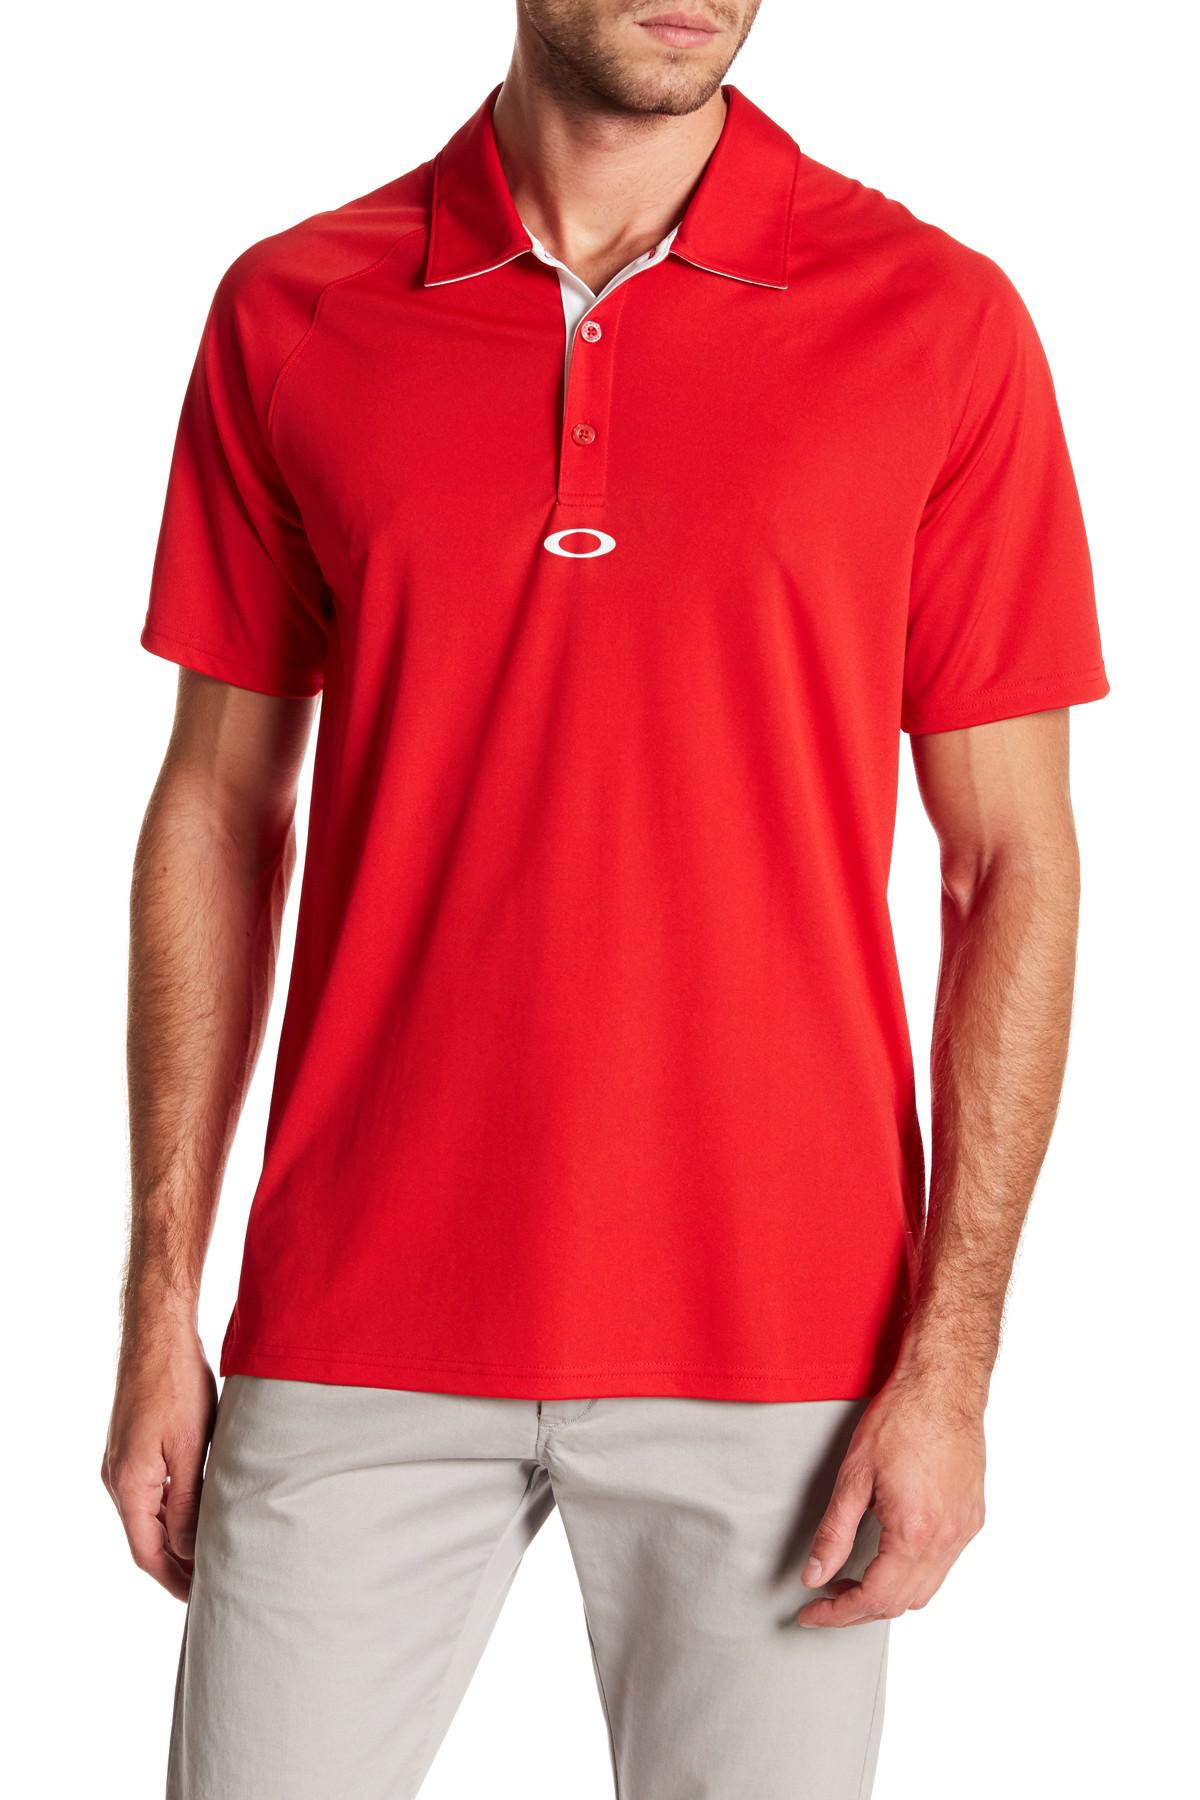 Lyst - Oakley Elemental Polo Shirt in Red for Men